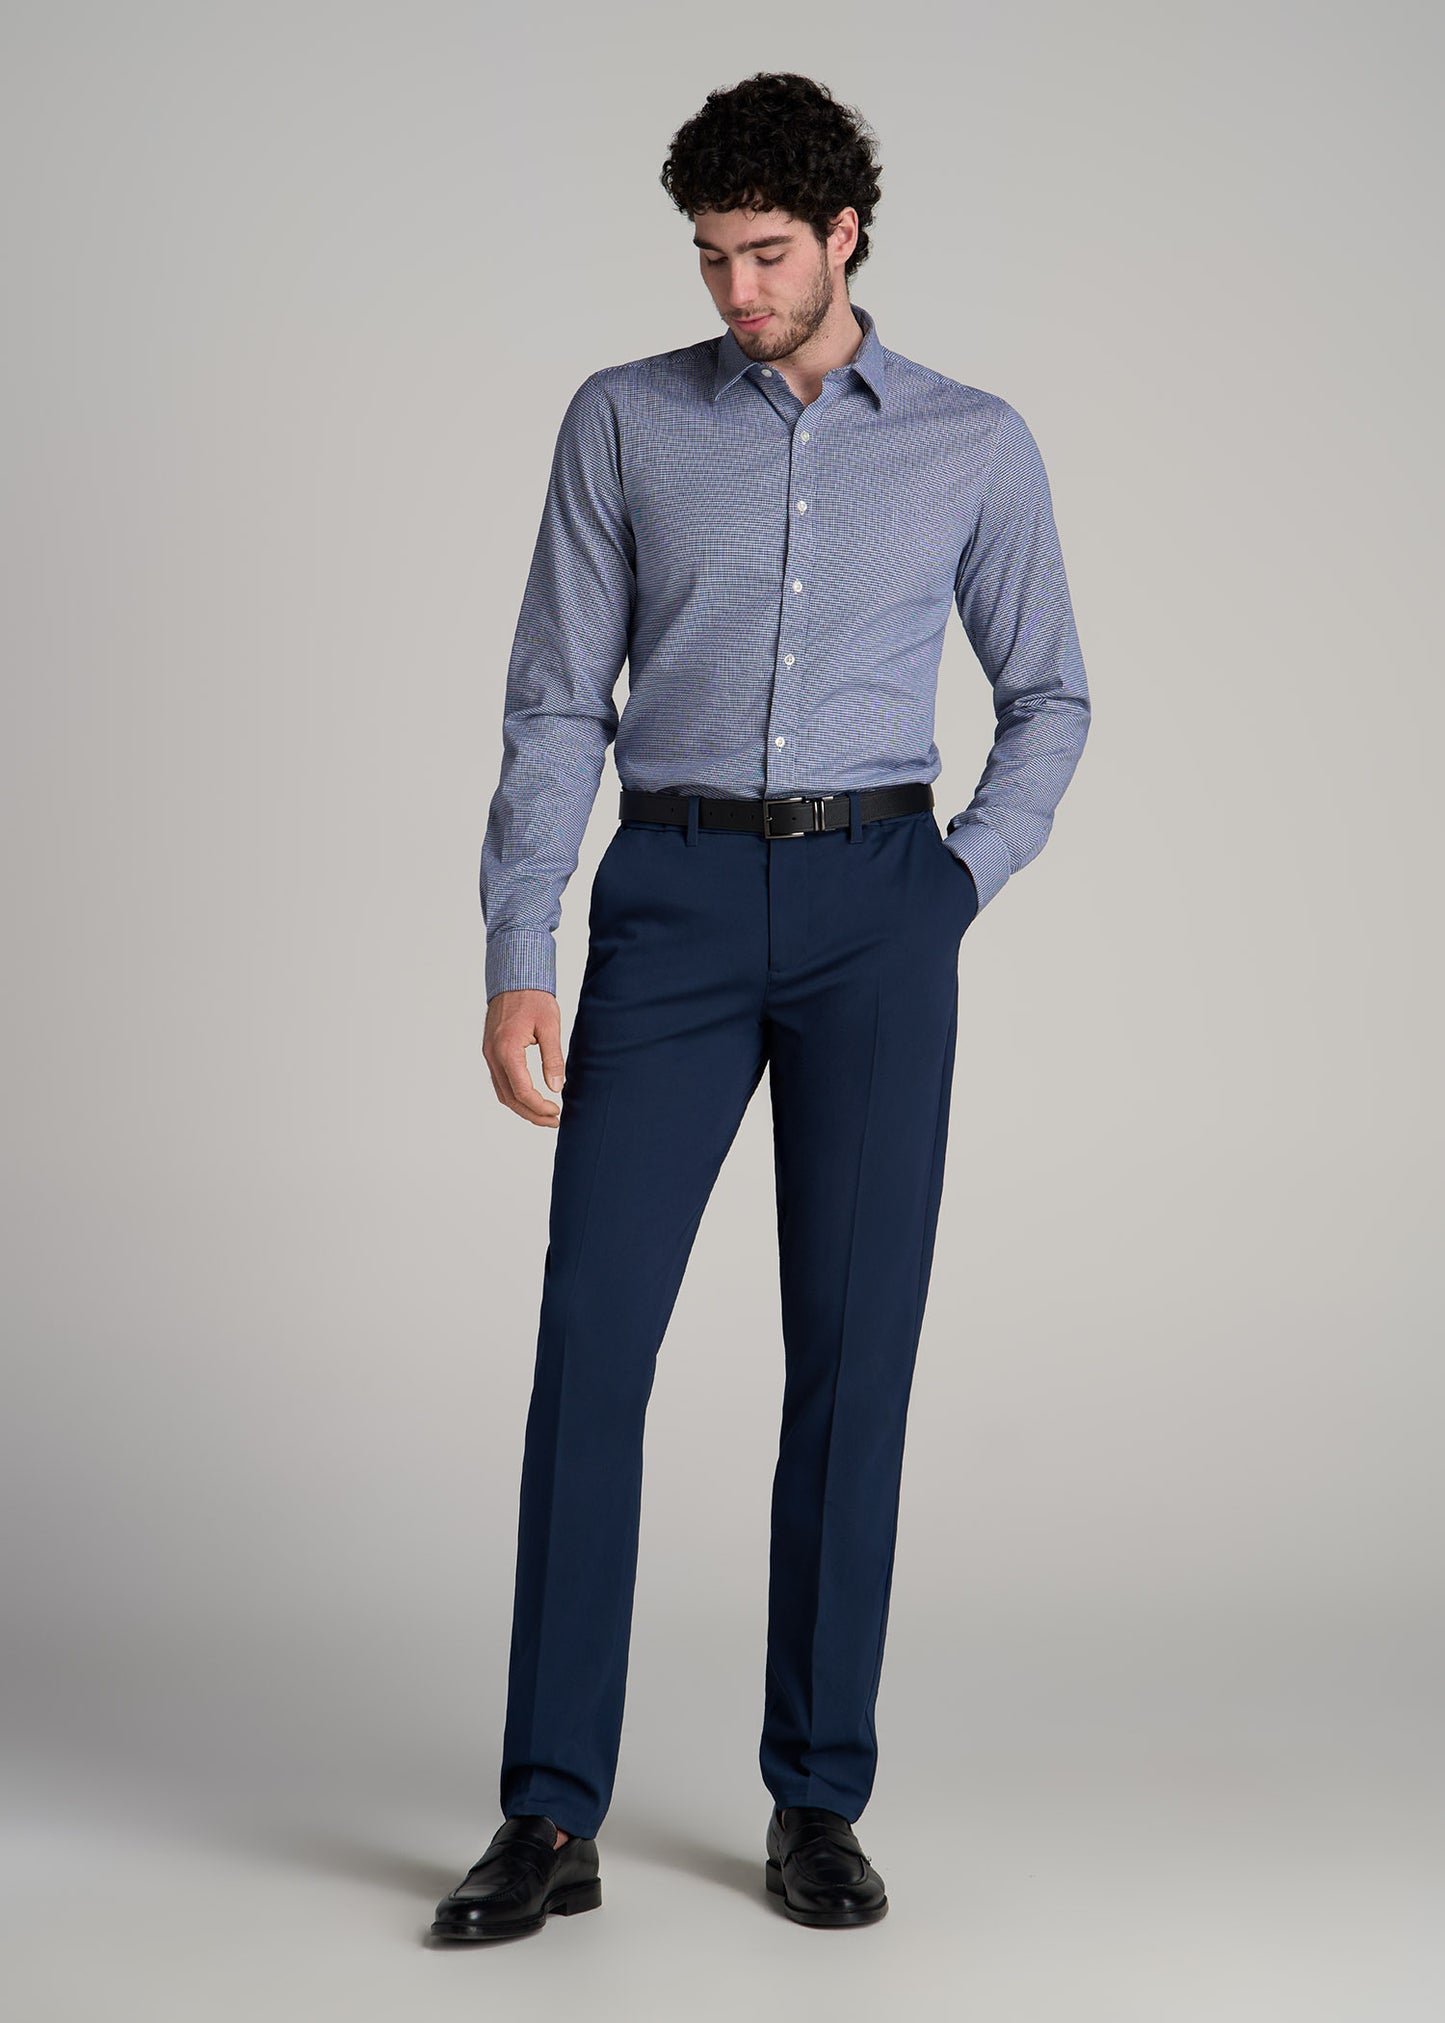 Oskar Button-Up Shirt for Tall Men in Navy Houndstooth